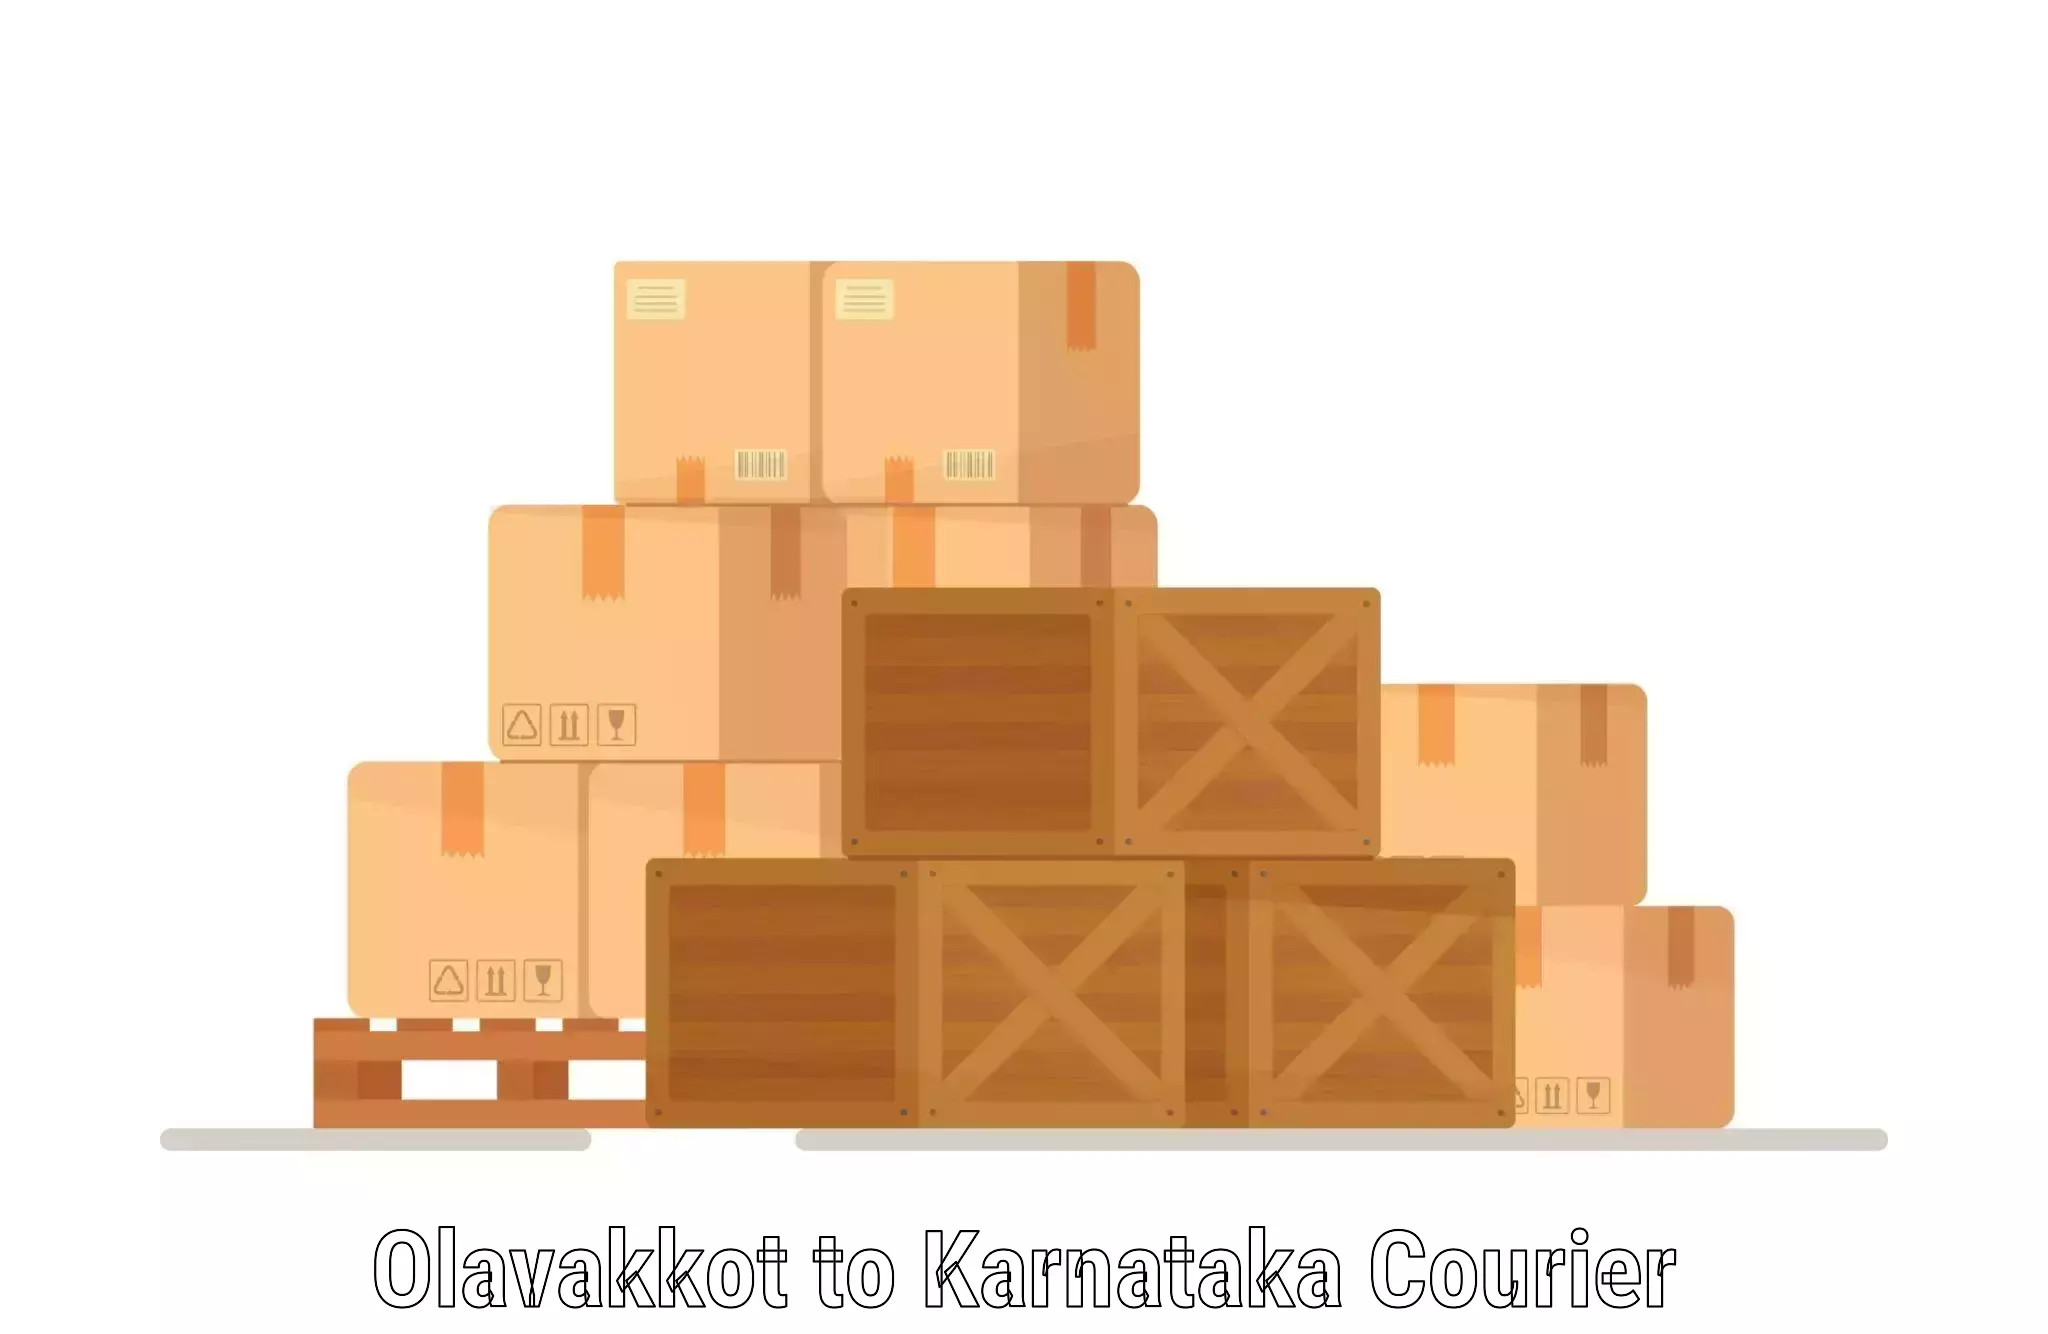 Flexible delivery schedules Olavakkot to Gauribidanur